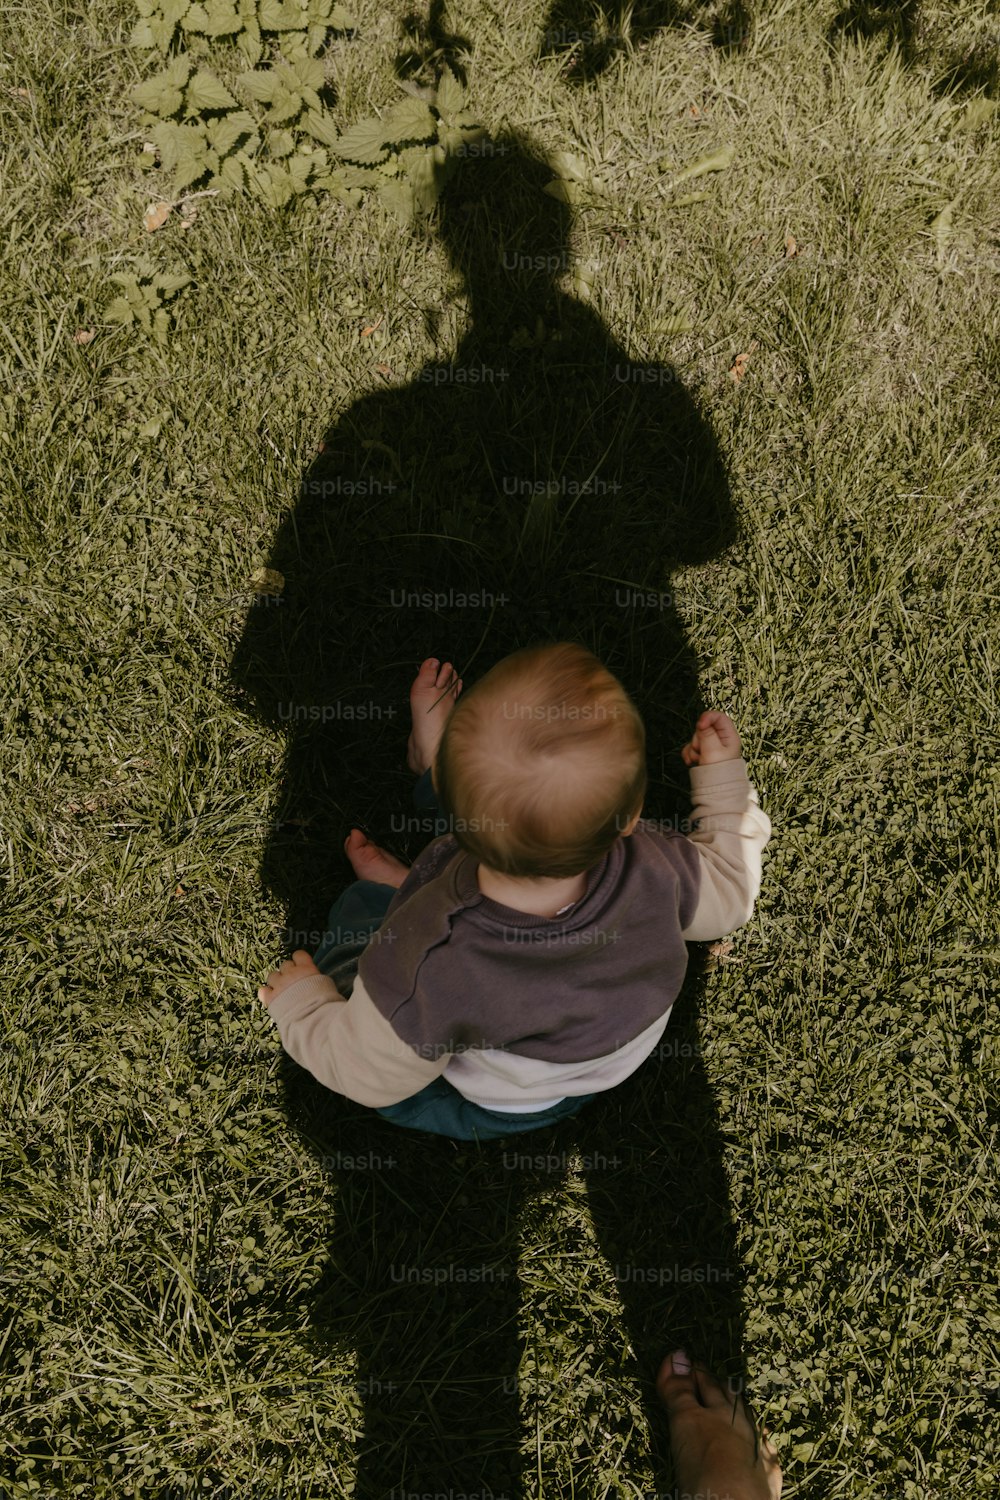 Ein Schatten einer Person, die ein Baby hält